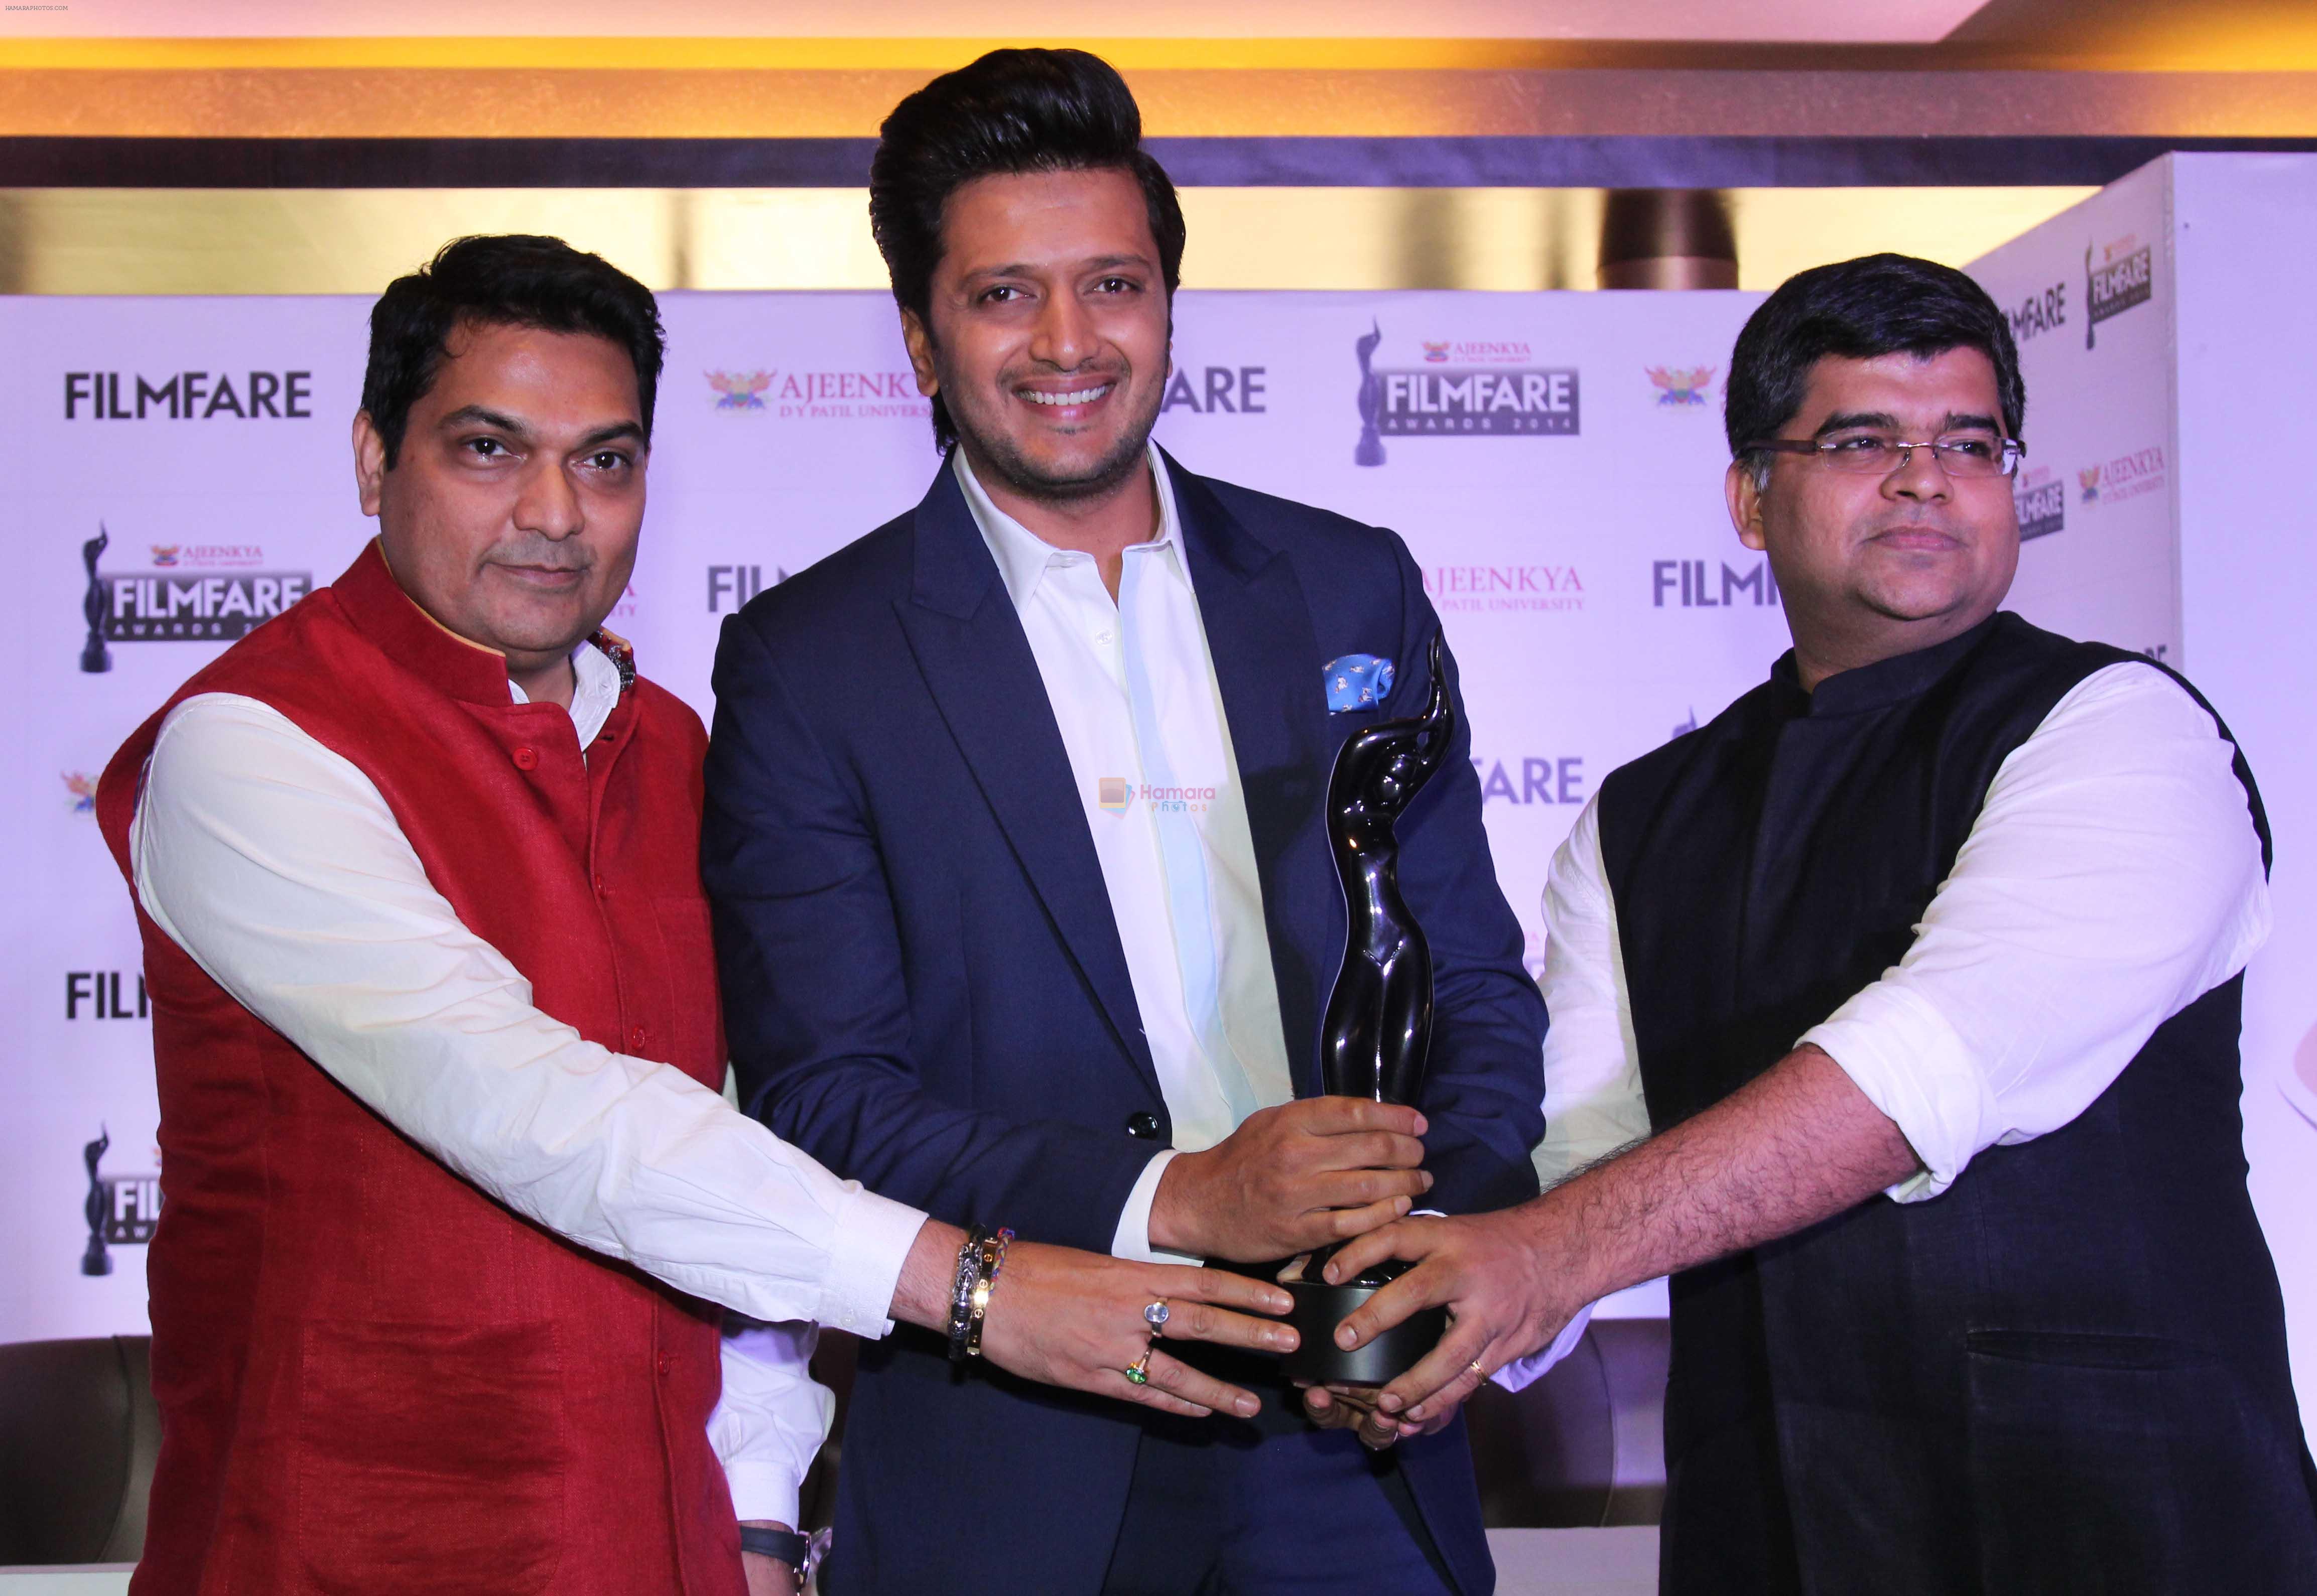 Dr. Ajeenkya DY Patil, Riteish Deshmukh & Jitesh Pillaai at the Launch PC of _Ajeenkya DY Patil University Filmfare Awards 2014_